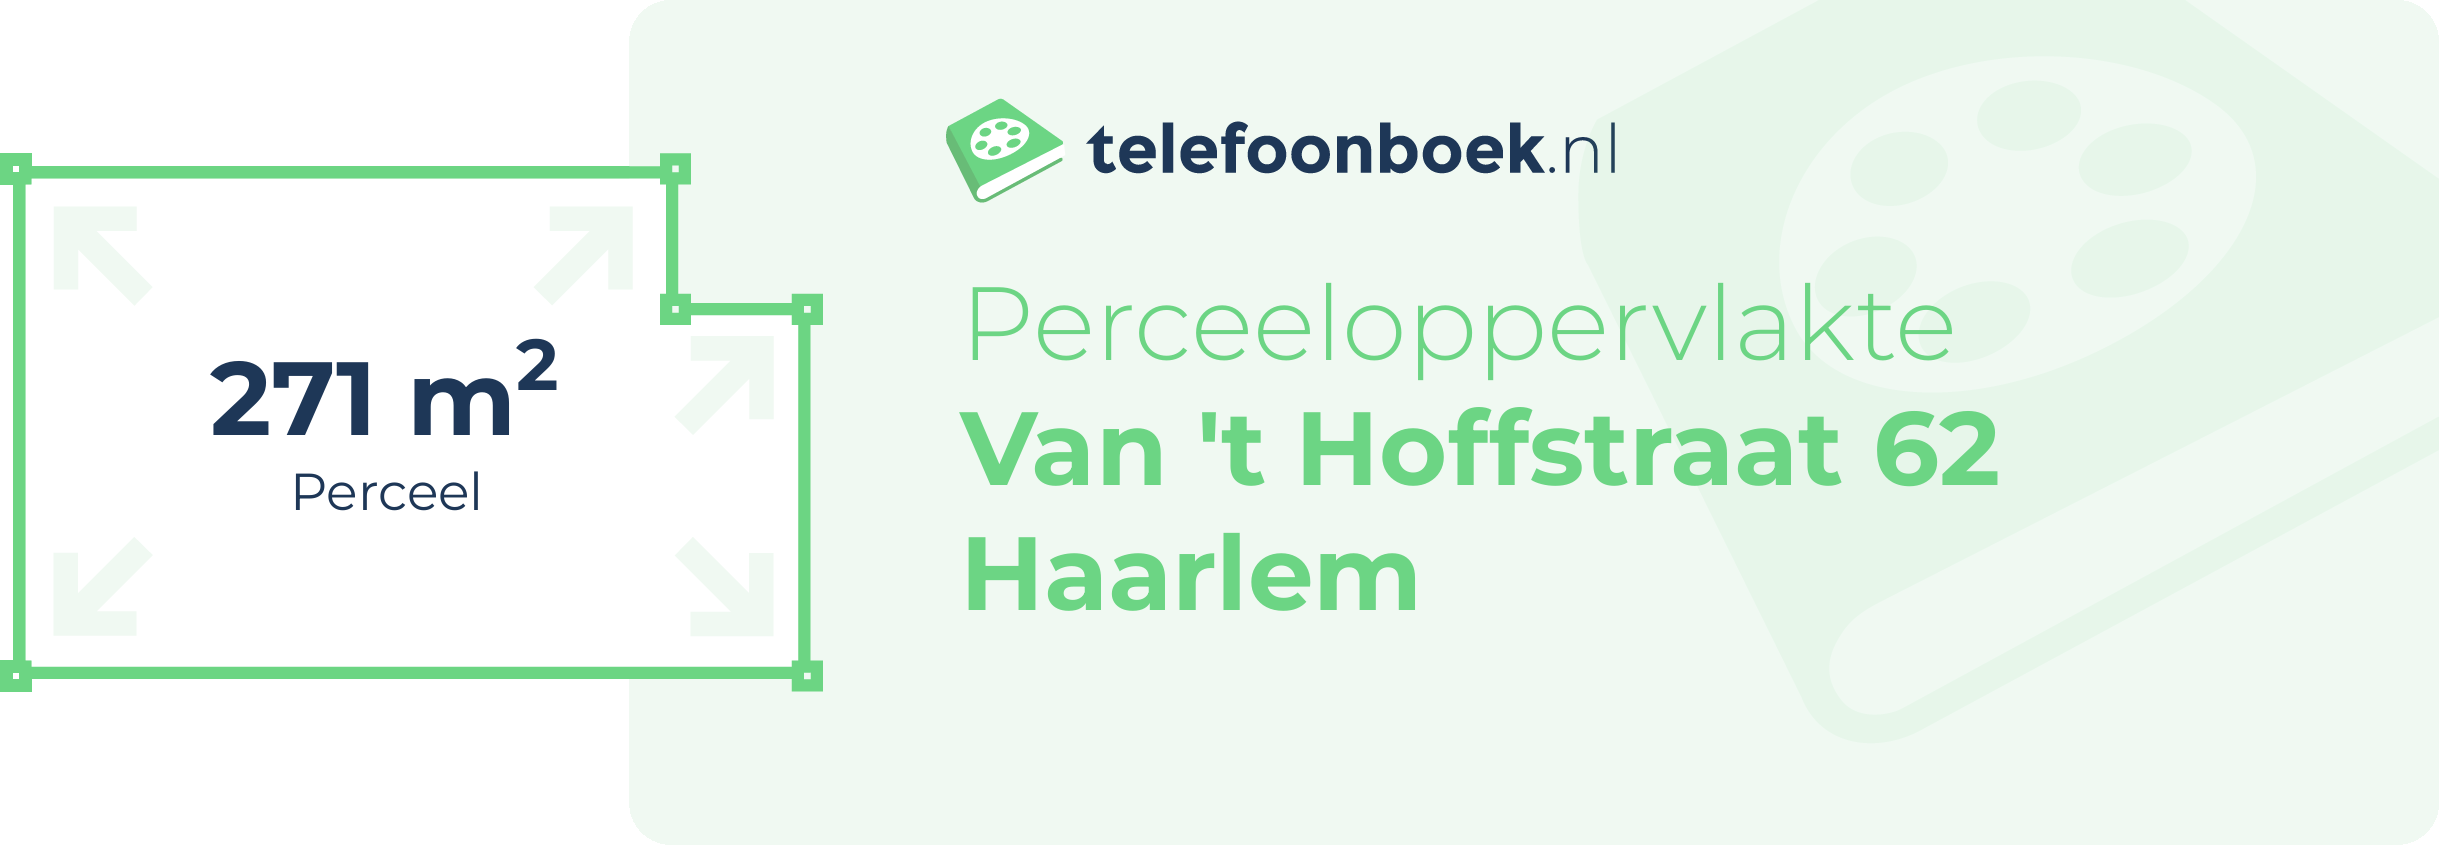 Perceeloppervlakte Van 't Hoffstraat 62 Haarlem